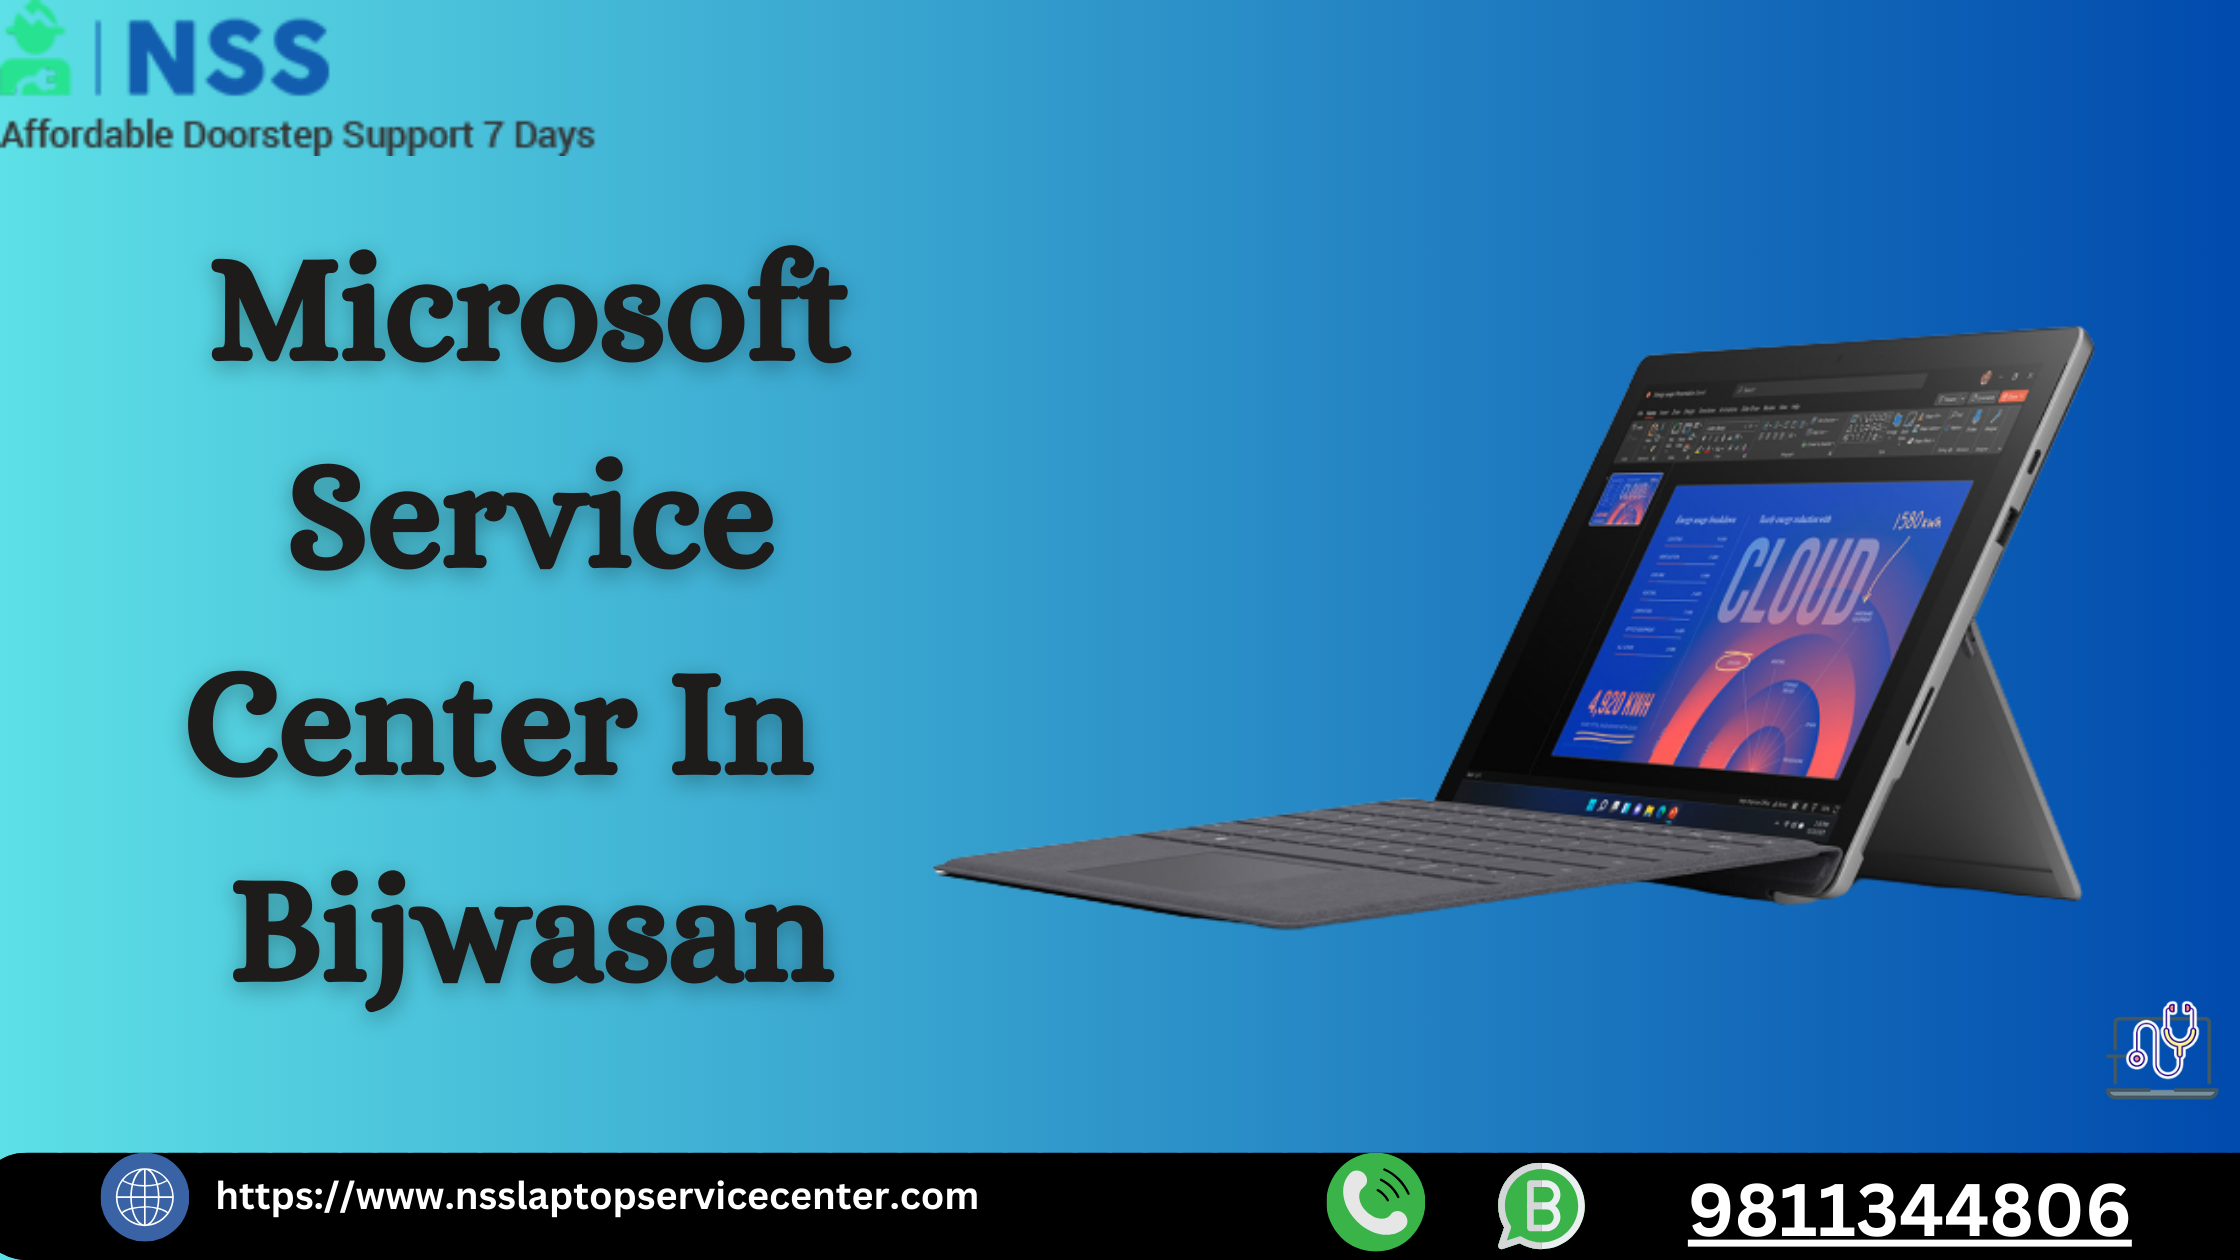 Microsoft Service Center in Bijwasan Near Delhi